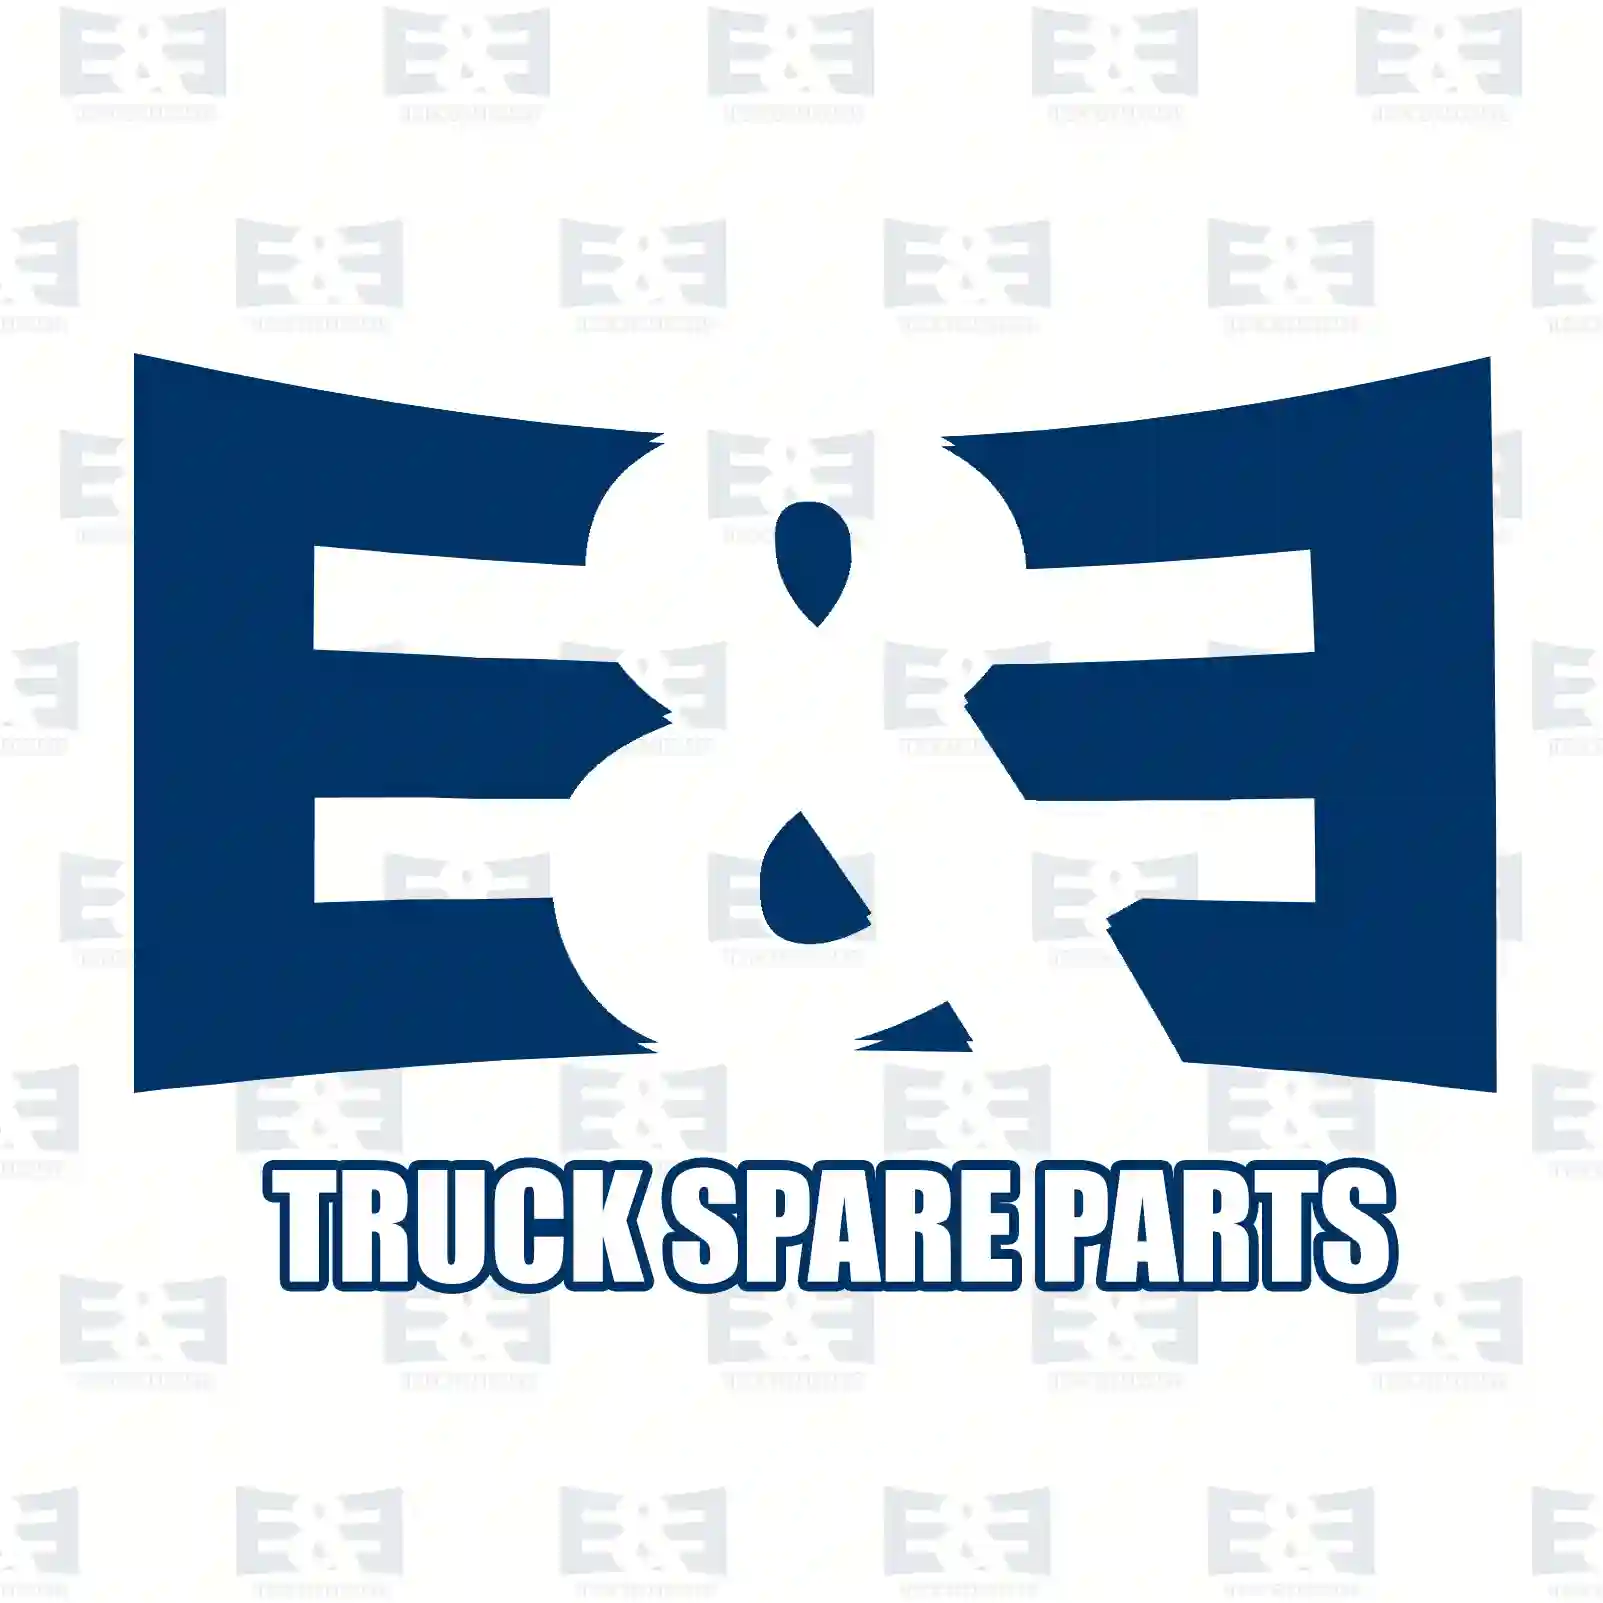 Con rod bearing kit, 2E2207400, 7400276134S, 276134S, ZG02546-0008 ||  2E2207400 E&E Truck Spare Parts | Truck Spare Parts, Auotomotive Spare Parts Con rod bearing kit, 2E2207400, 7400276134S, 276134S, ZG02546-0008 ||  2E2207400 E&E Truck Spare Parts | Truck Spare Parts, Auotomotive Spare Parts